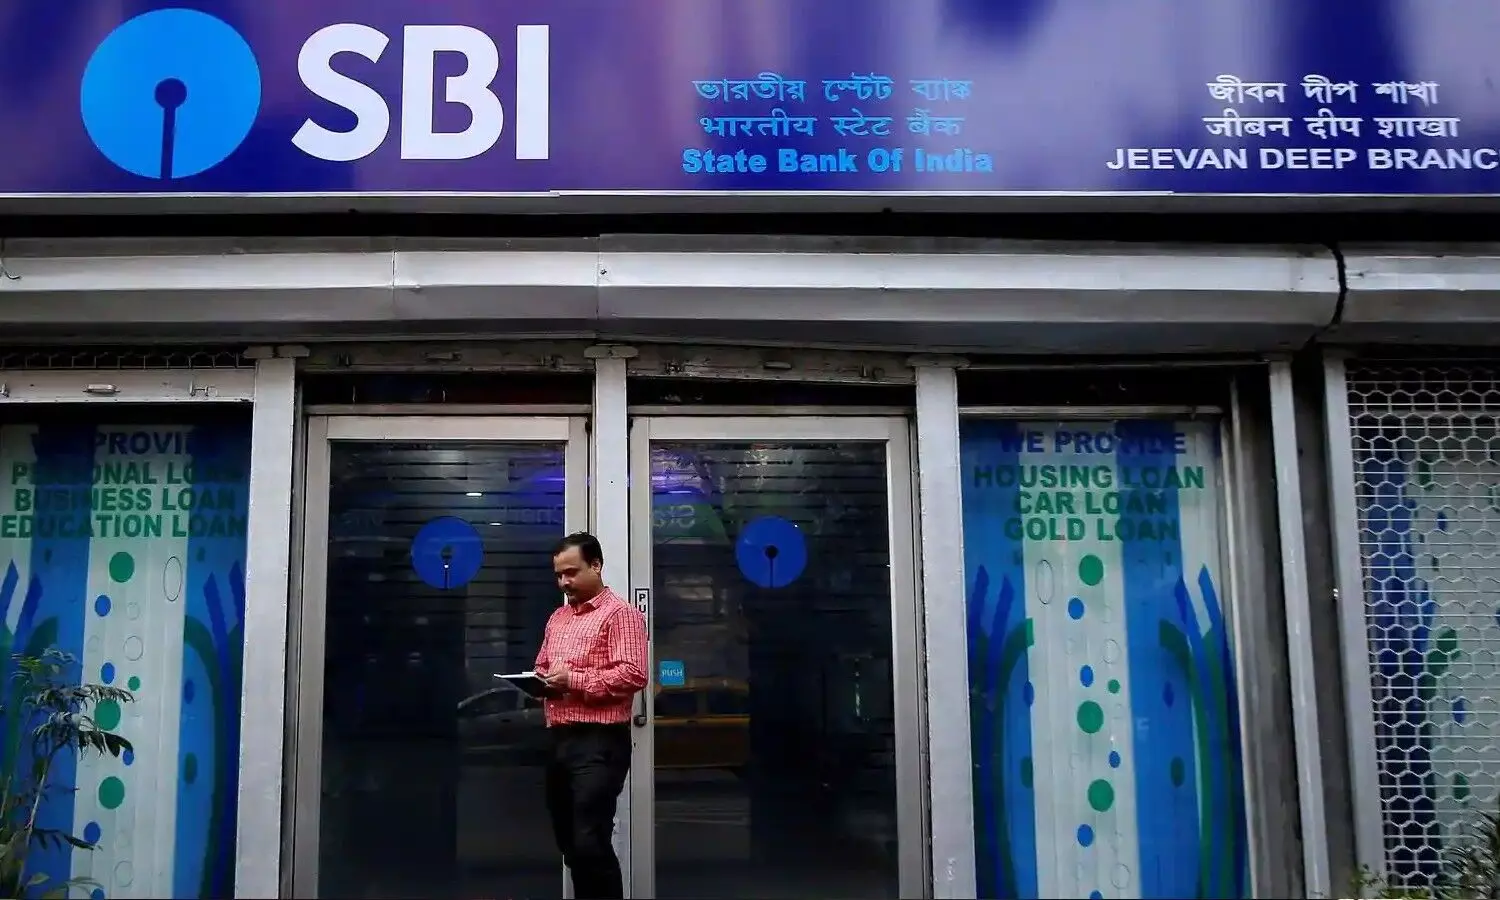 SBI Digital Banking Services: भारतीय स्टेट बैंक के ग्राहकों के लिए आसान हुआ बैंक का सारा काम, ऐसे उठाएं फायदा